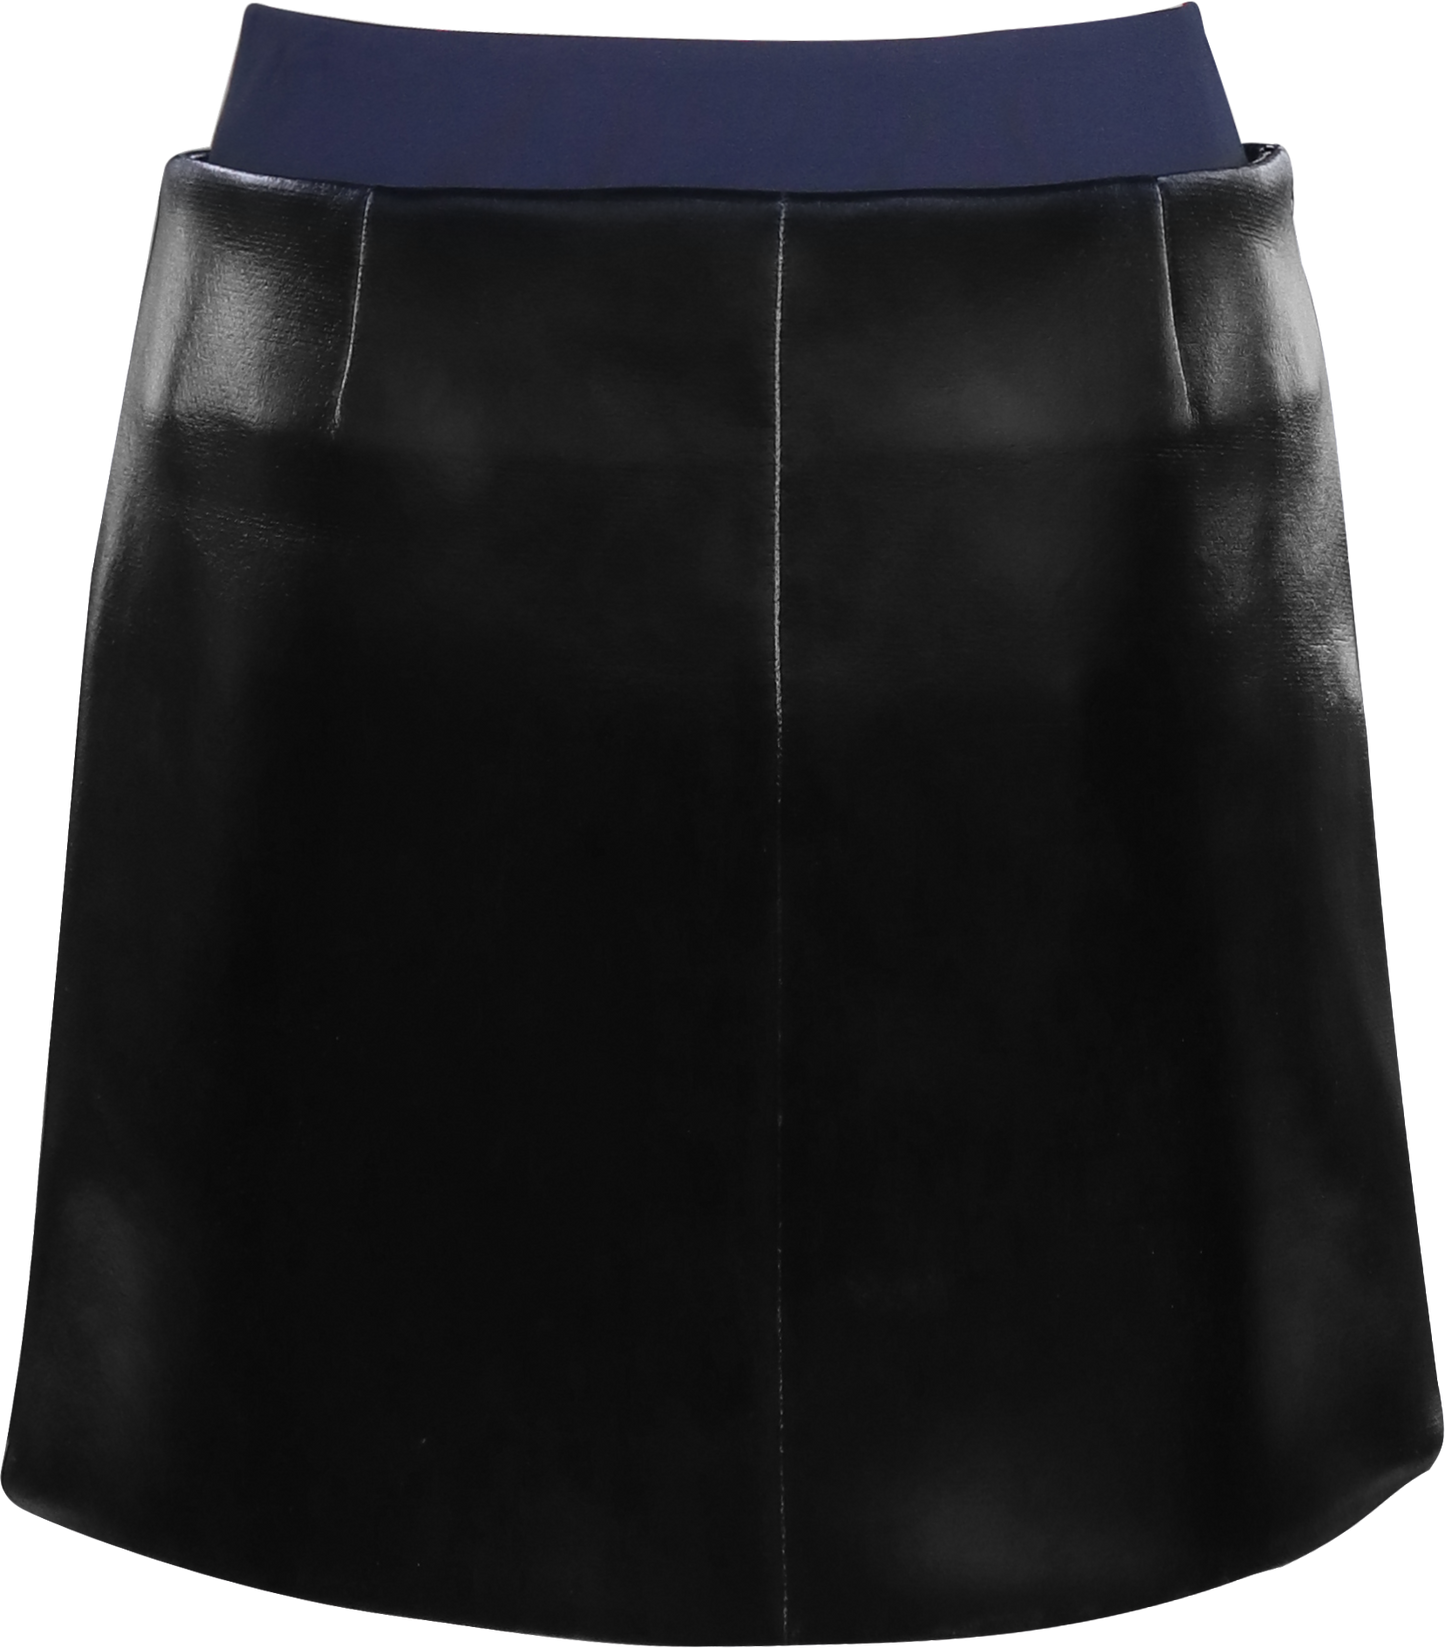 Designed Short Skirt